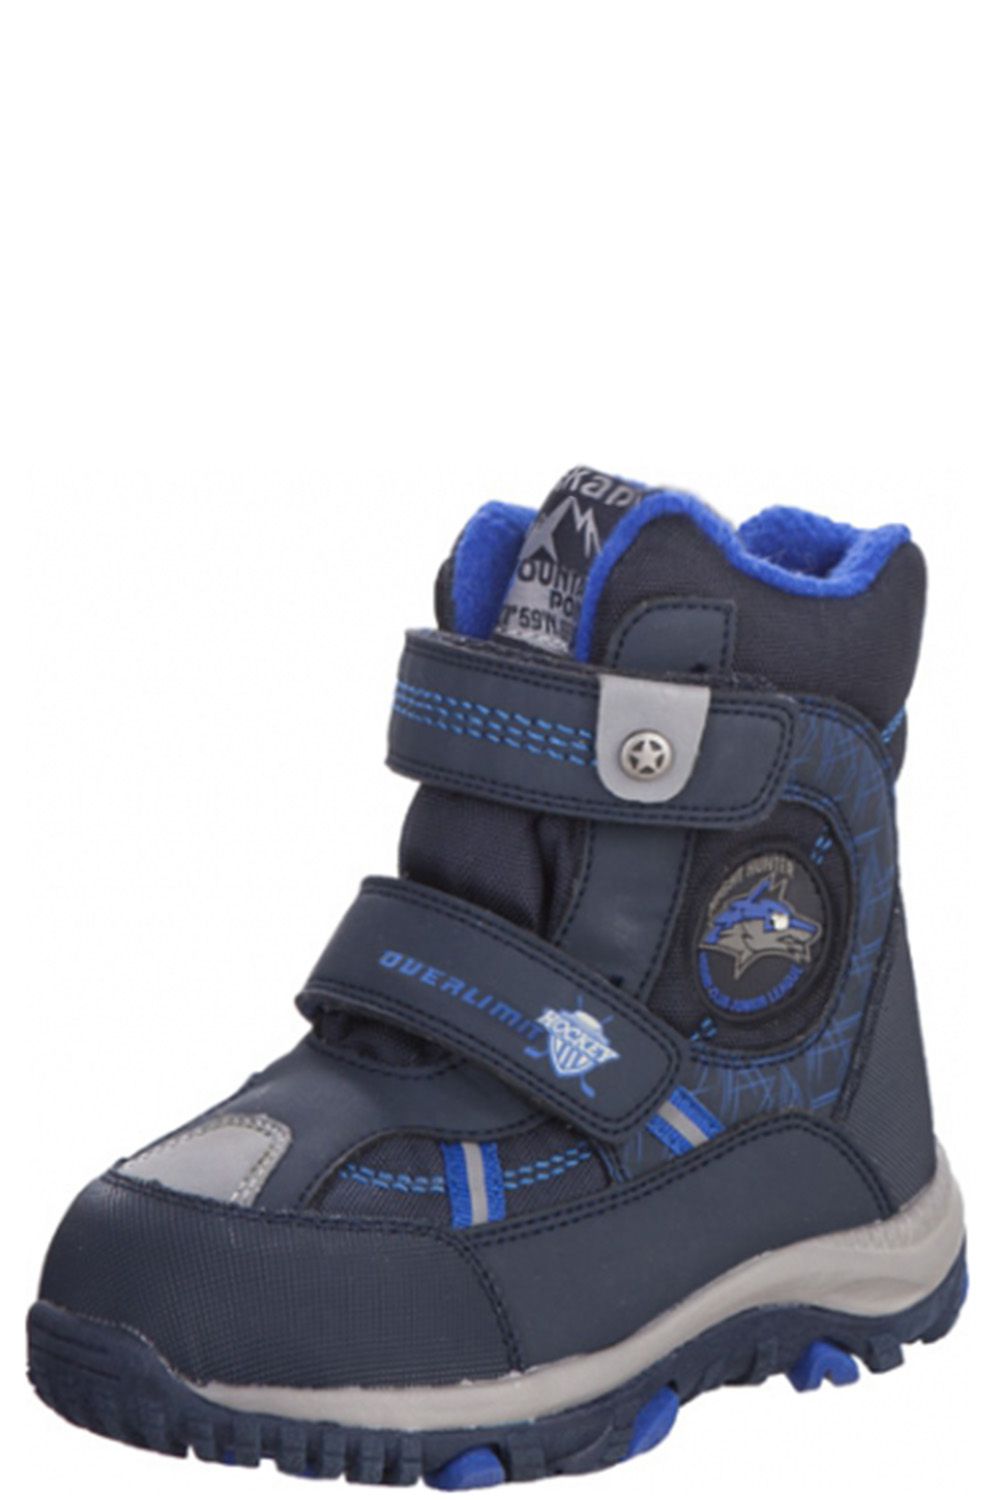 Ботинки Kapika, размер 25, цвет синий - фото 1